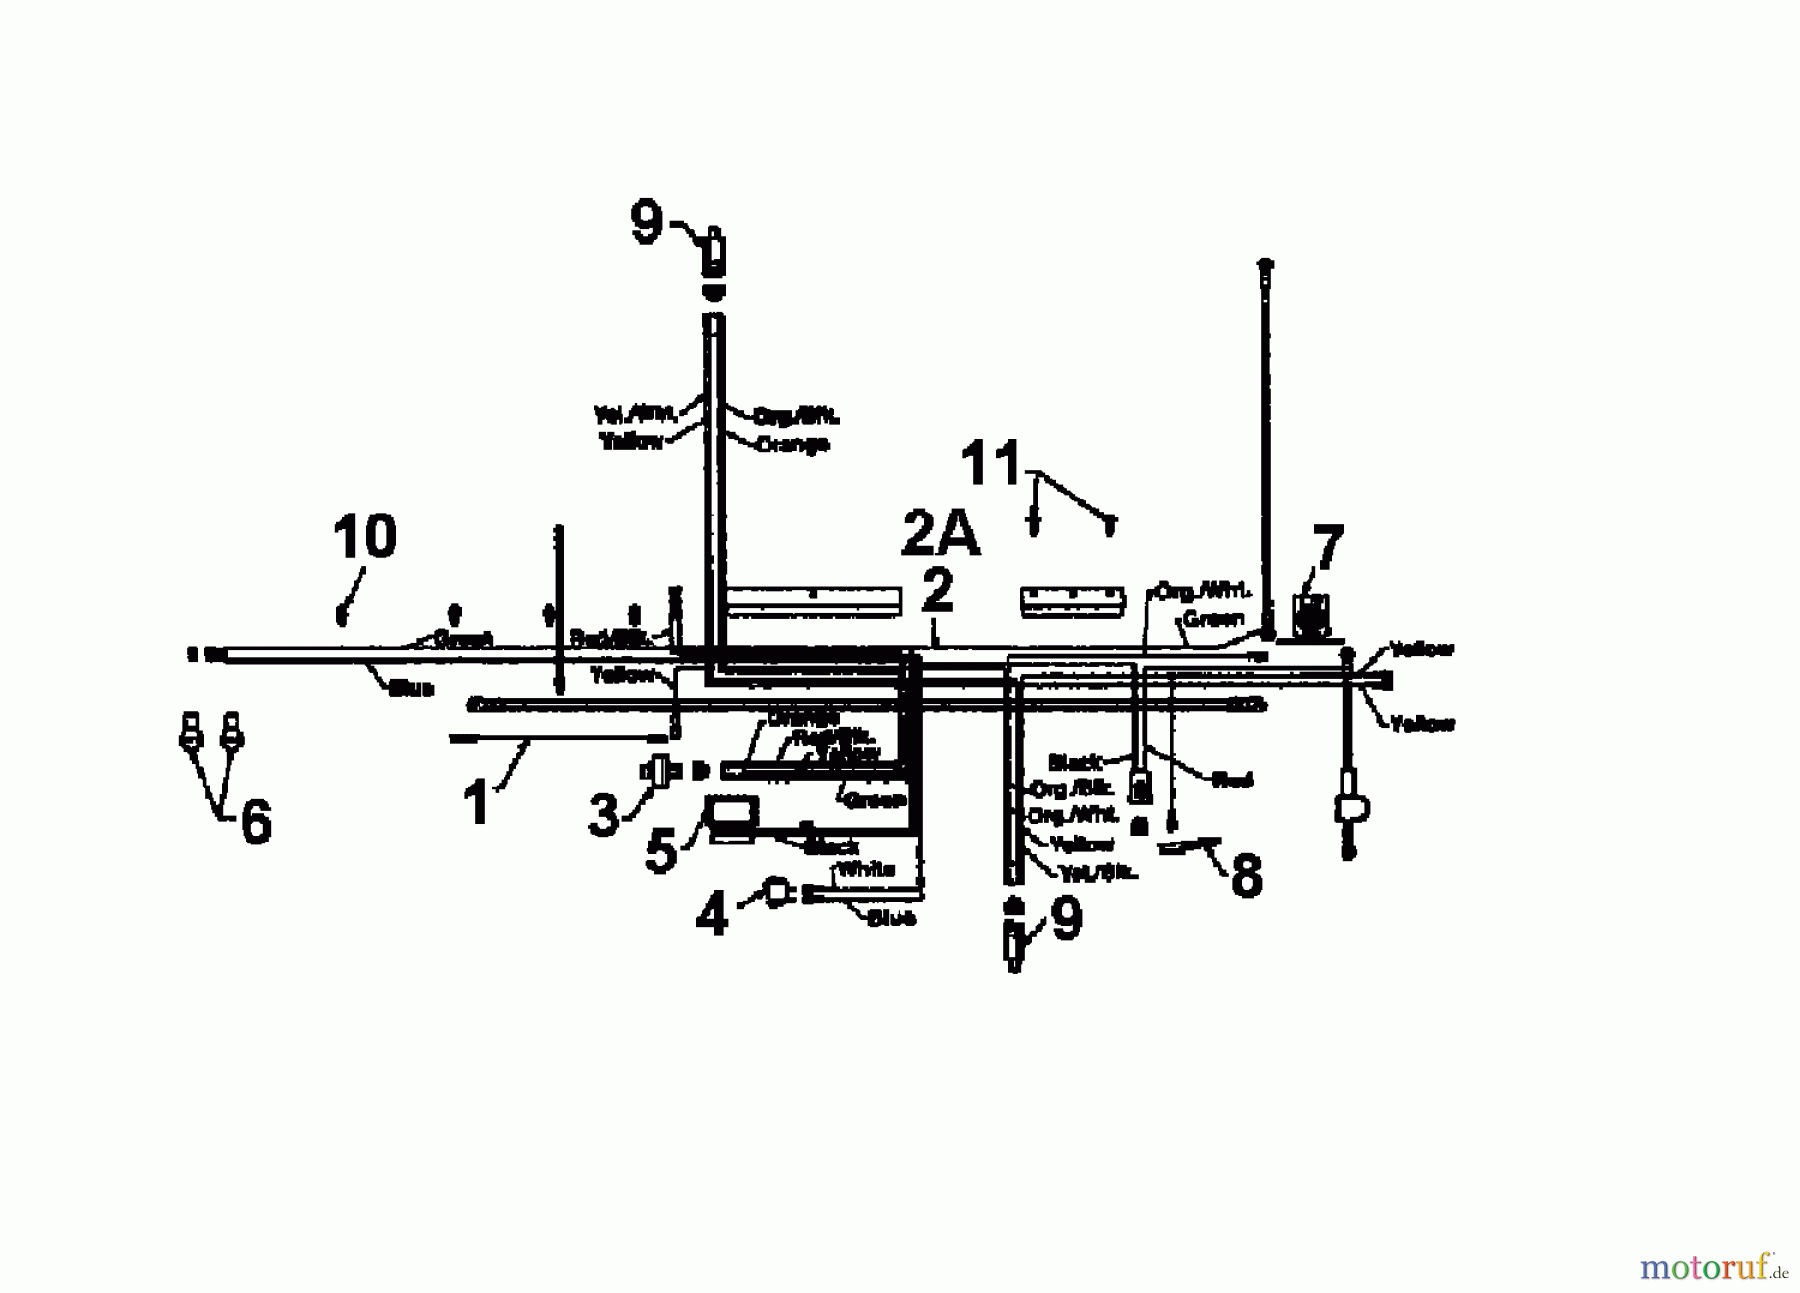  Edenparc Tracteurs de pelouse B 14596 13AM670F608  (1997) Plan électrique cylindre simple